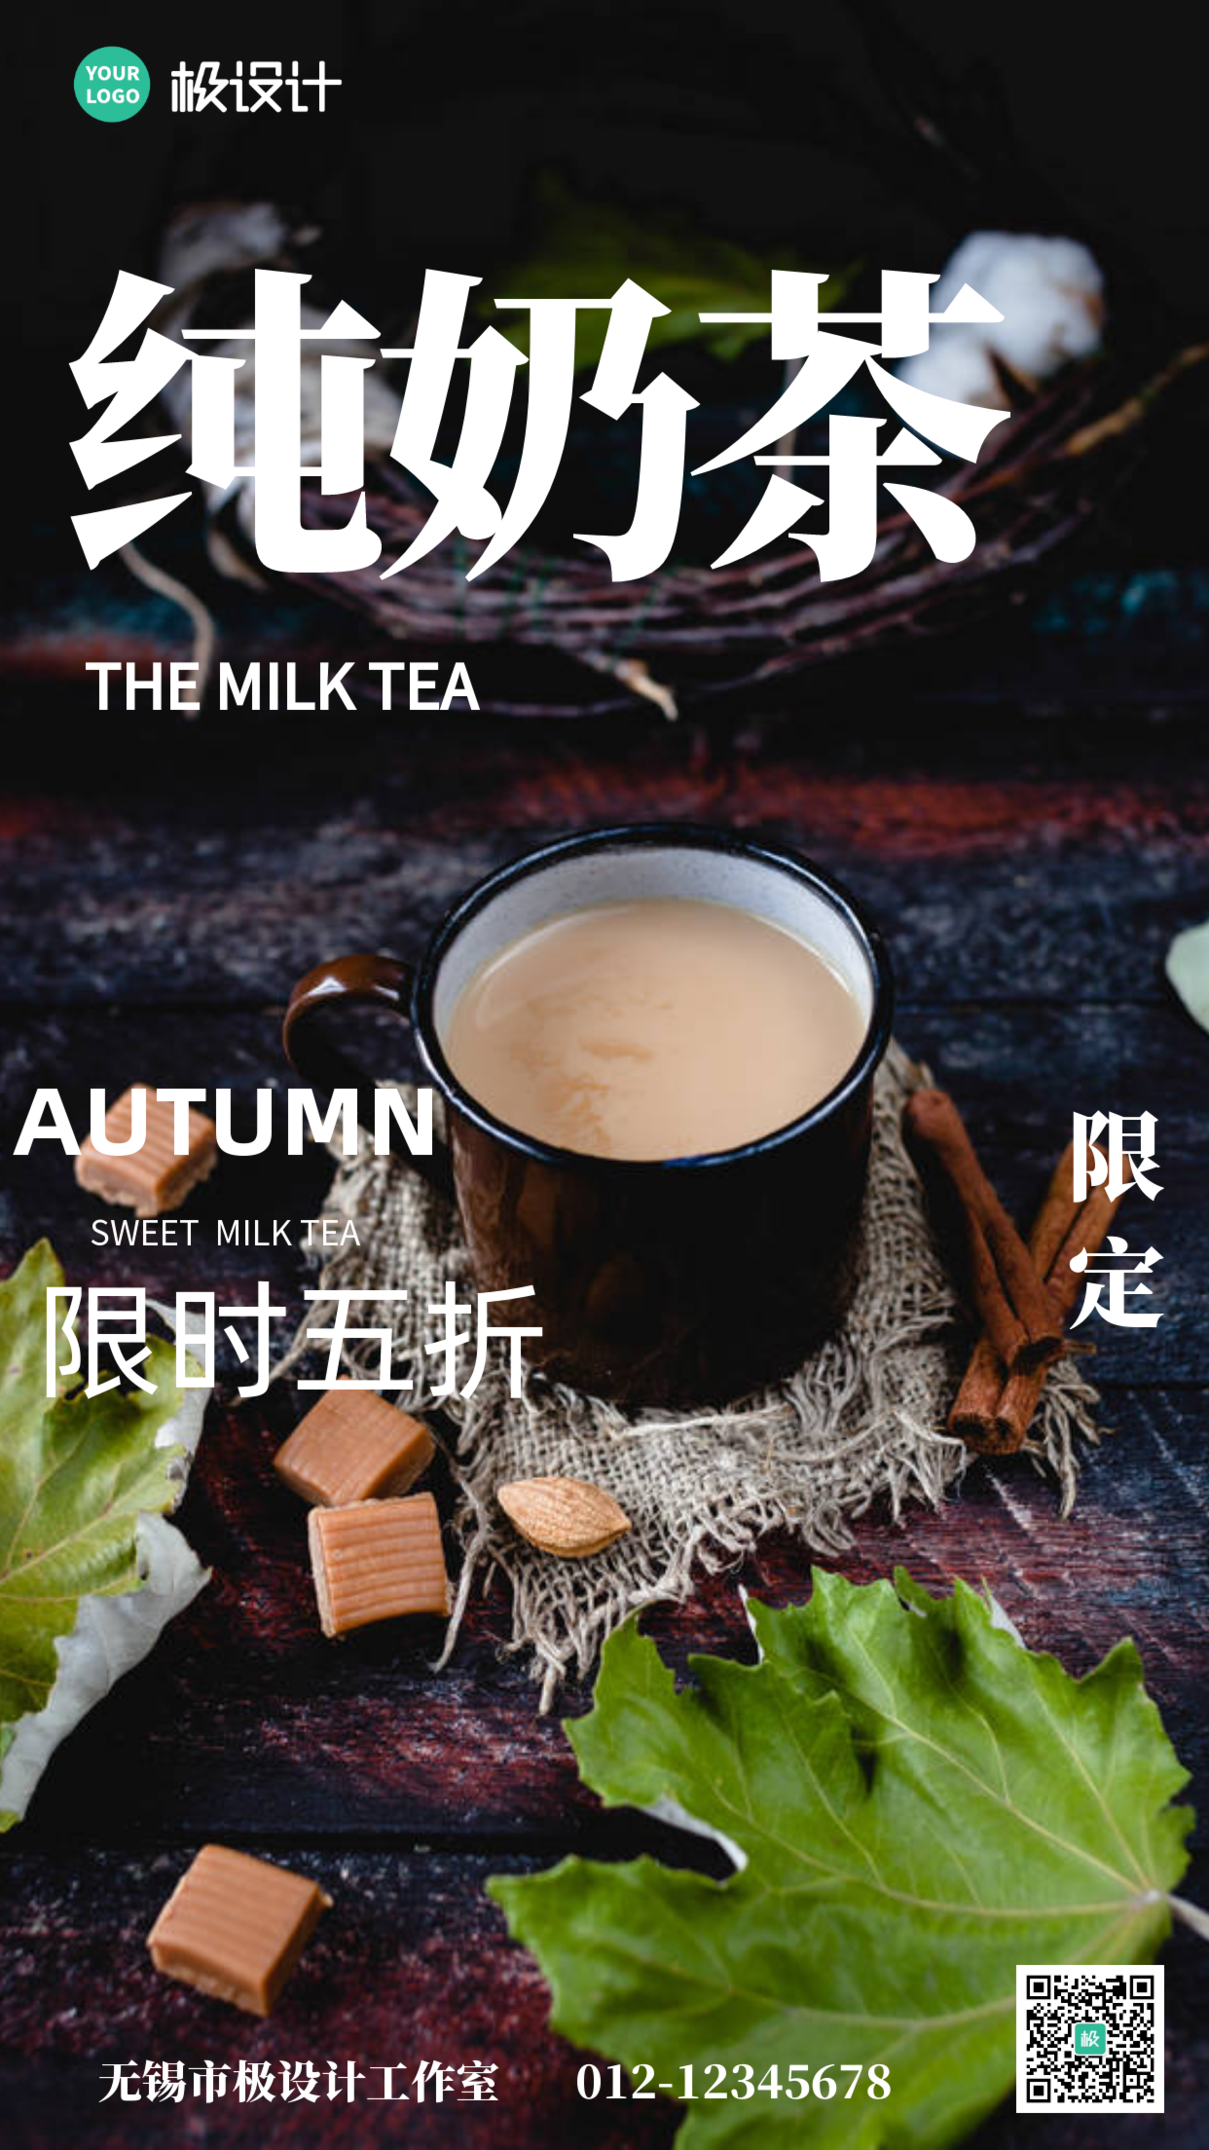 黑色简约秋季奶茶实体店产品宣传手机海报